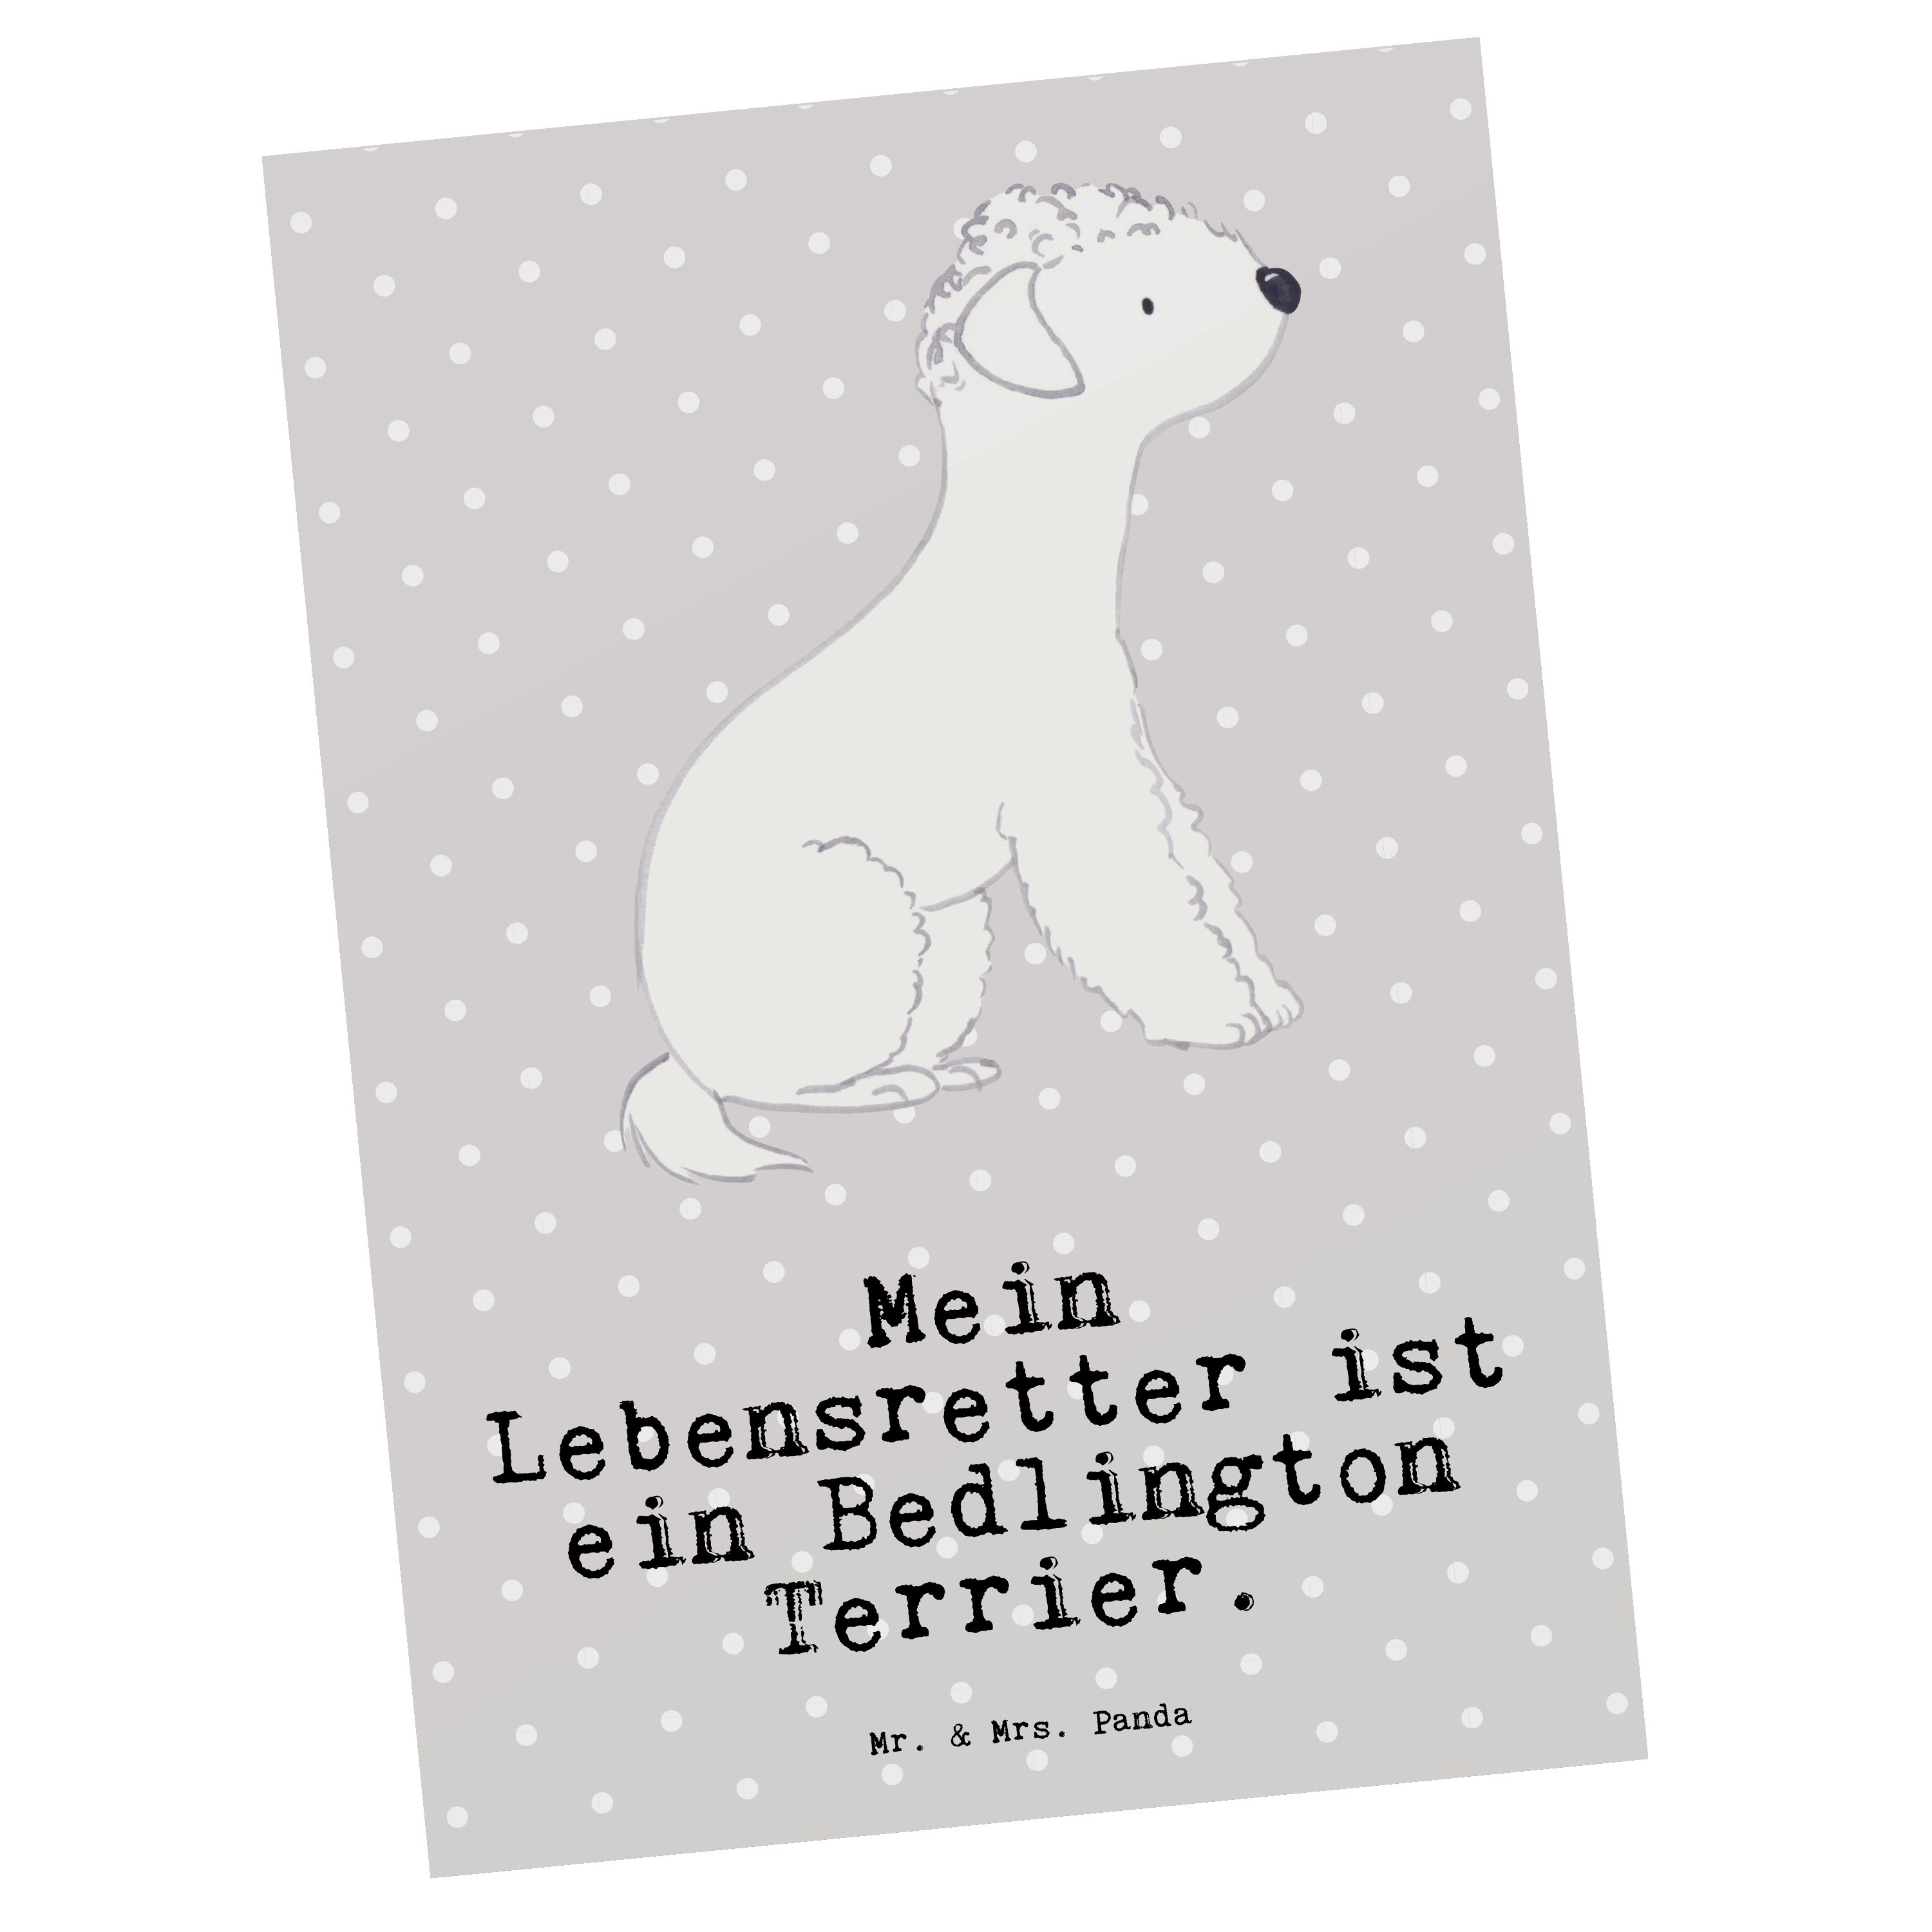 Mr. & Mrs. Panda Postkarte Bedlington Terrier Lebensretter - Grau Pastell - Geschenk, Ansichtska